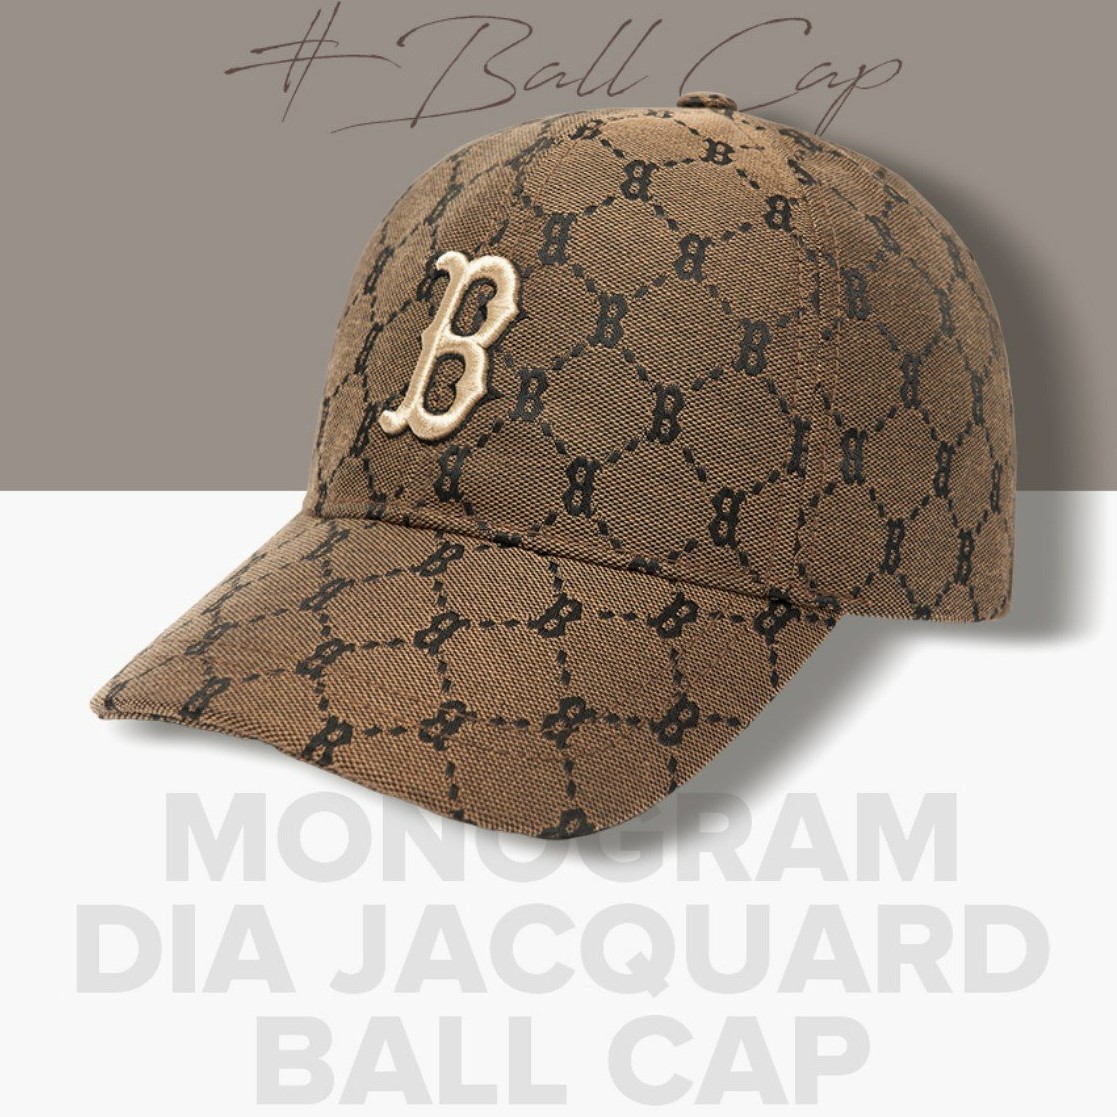 MLB  Nón bóng chày họa tiết monogram thời trang 3ACPFB01N50BGS